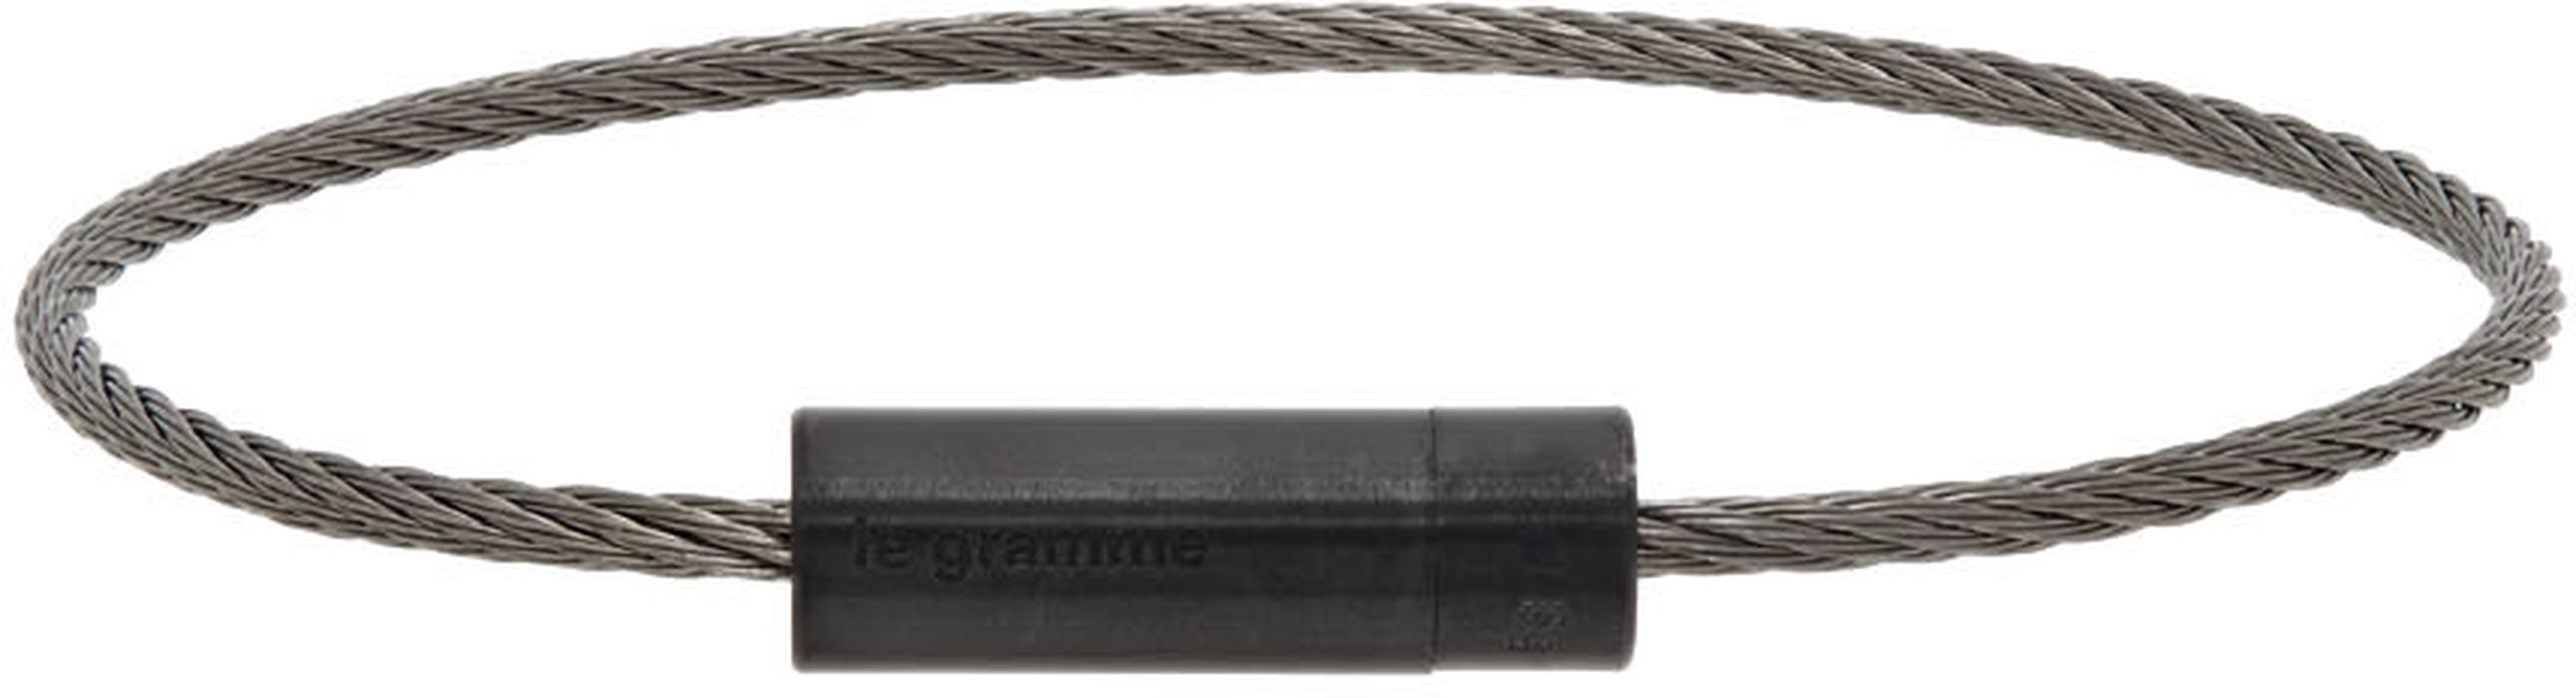 Le Gramme Black 'Le 5 Grammes' Cable Bracelet